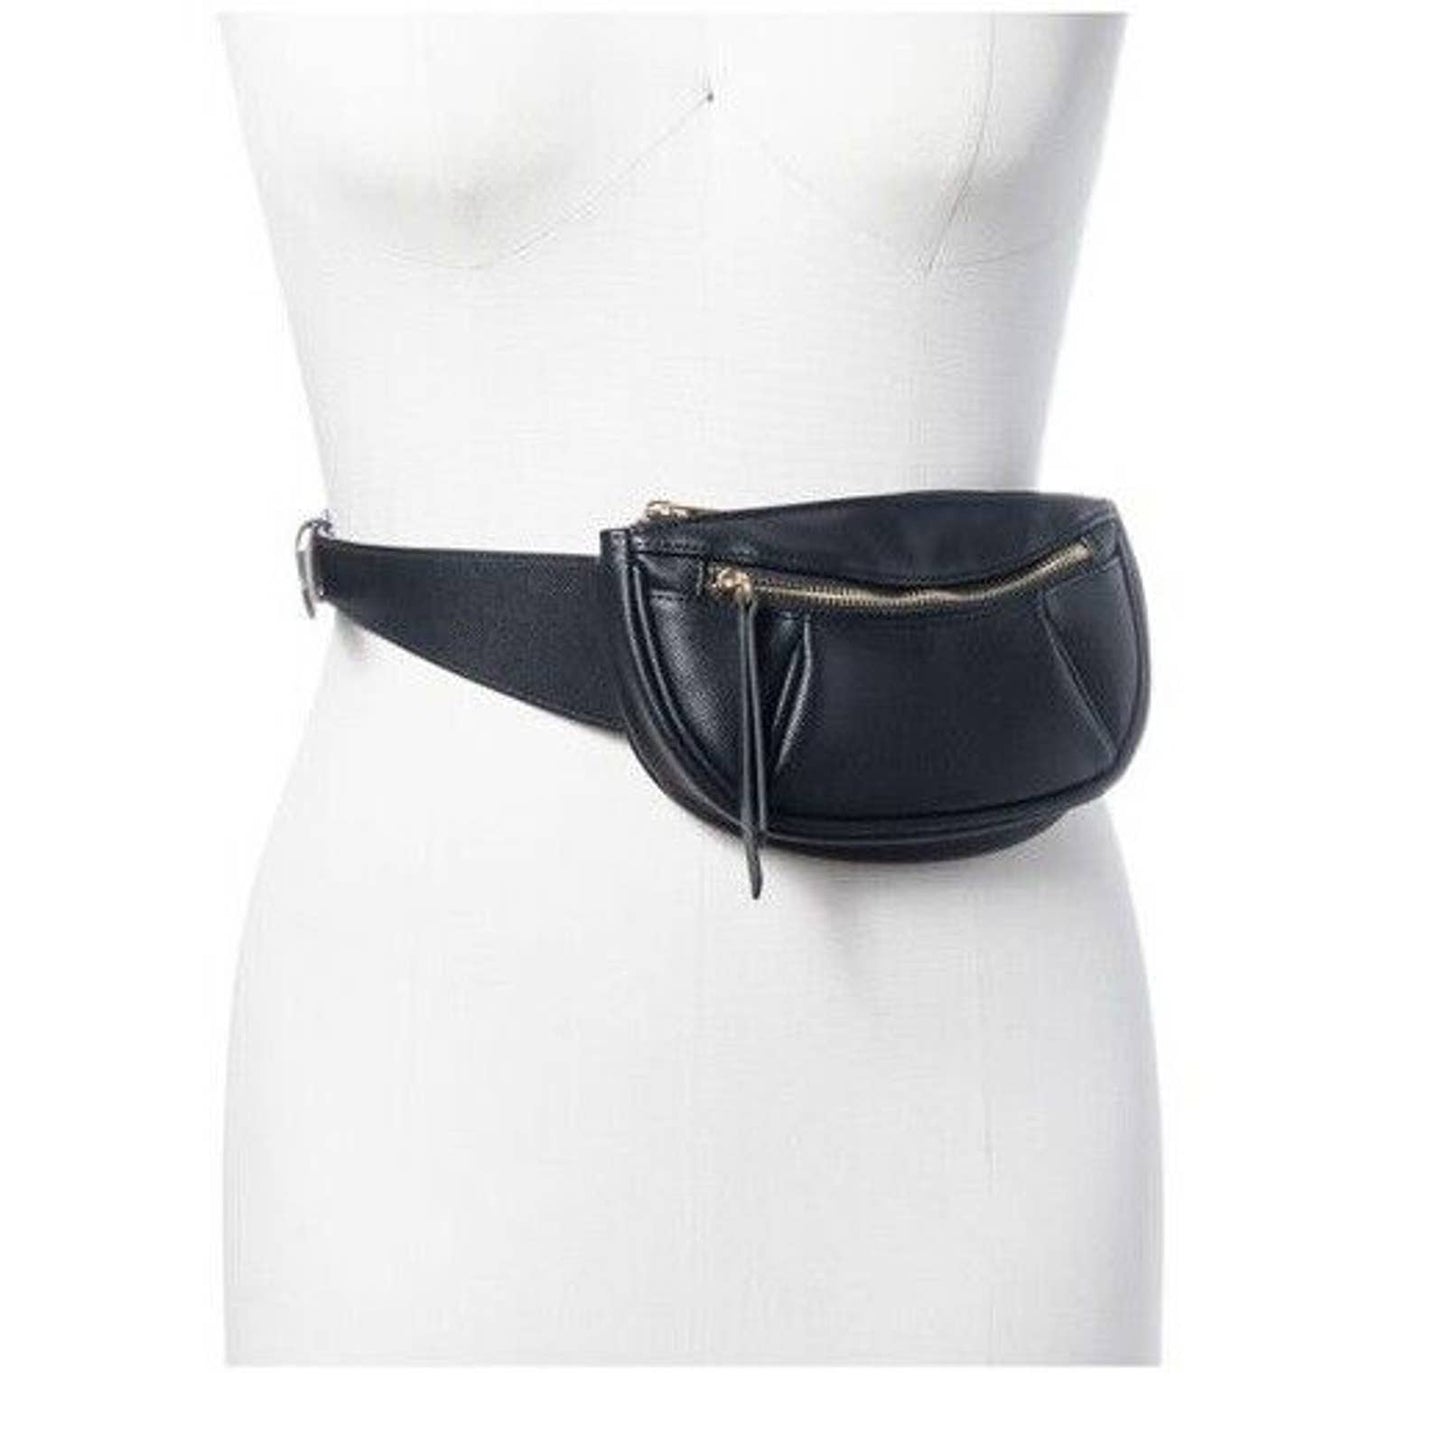 INC International Concepts Pebbled Belt Bag Black, Adjustable NWT, $58